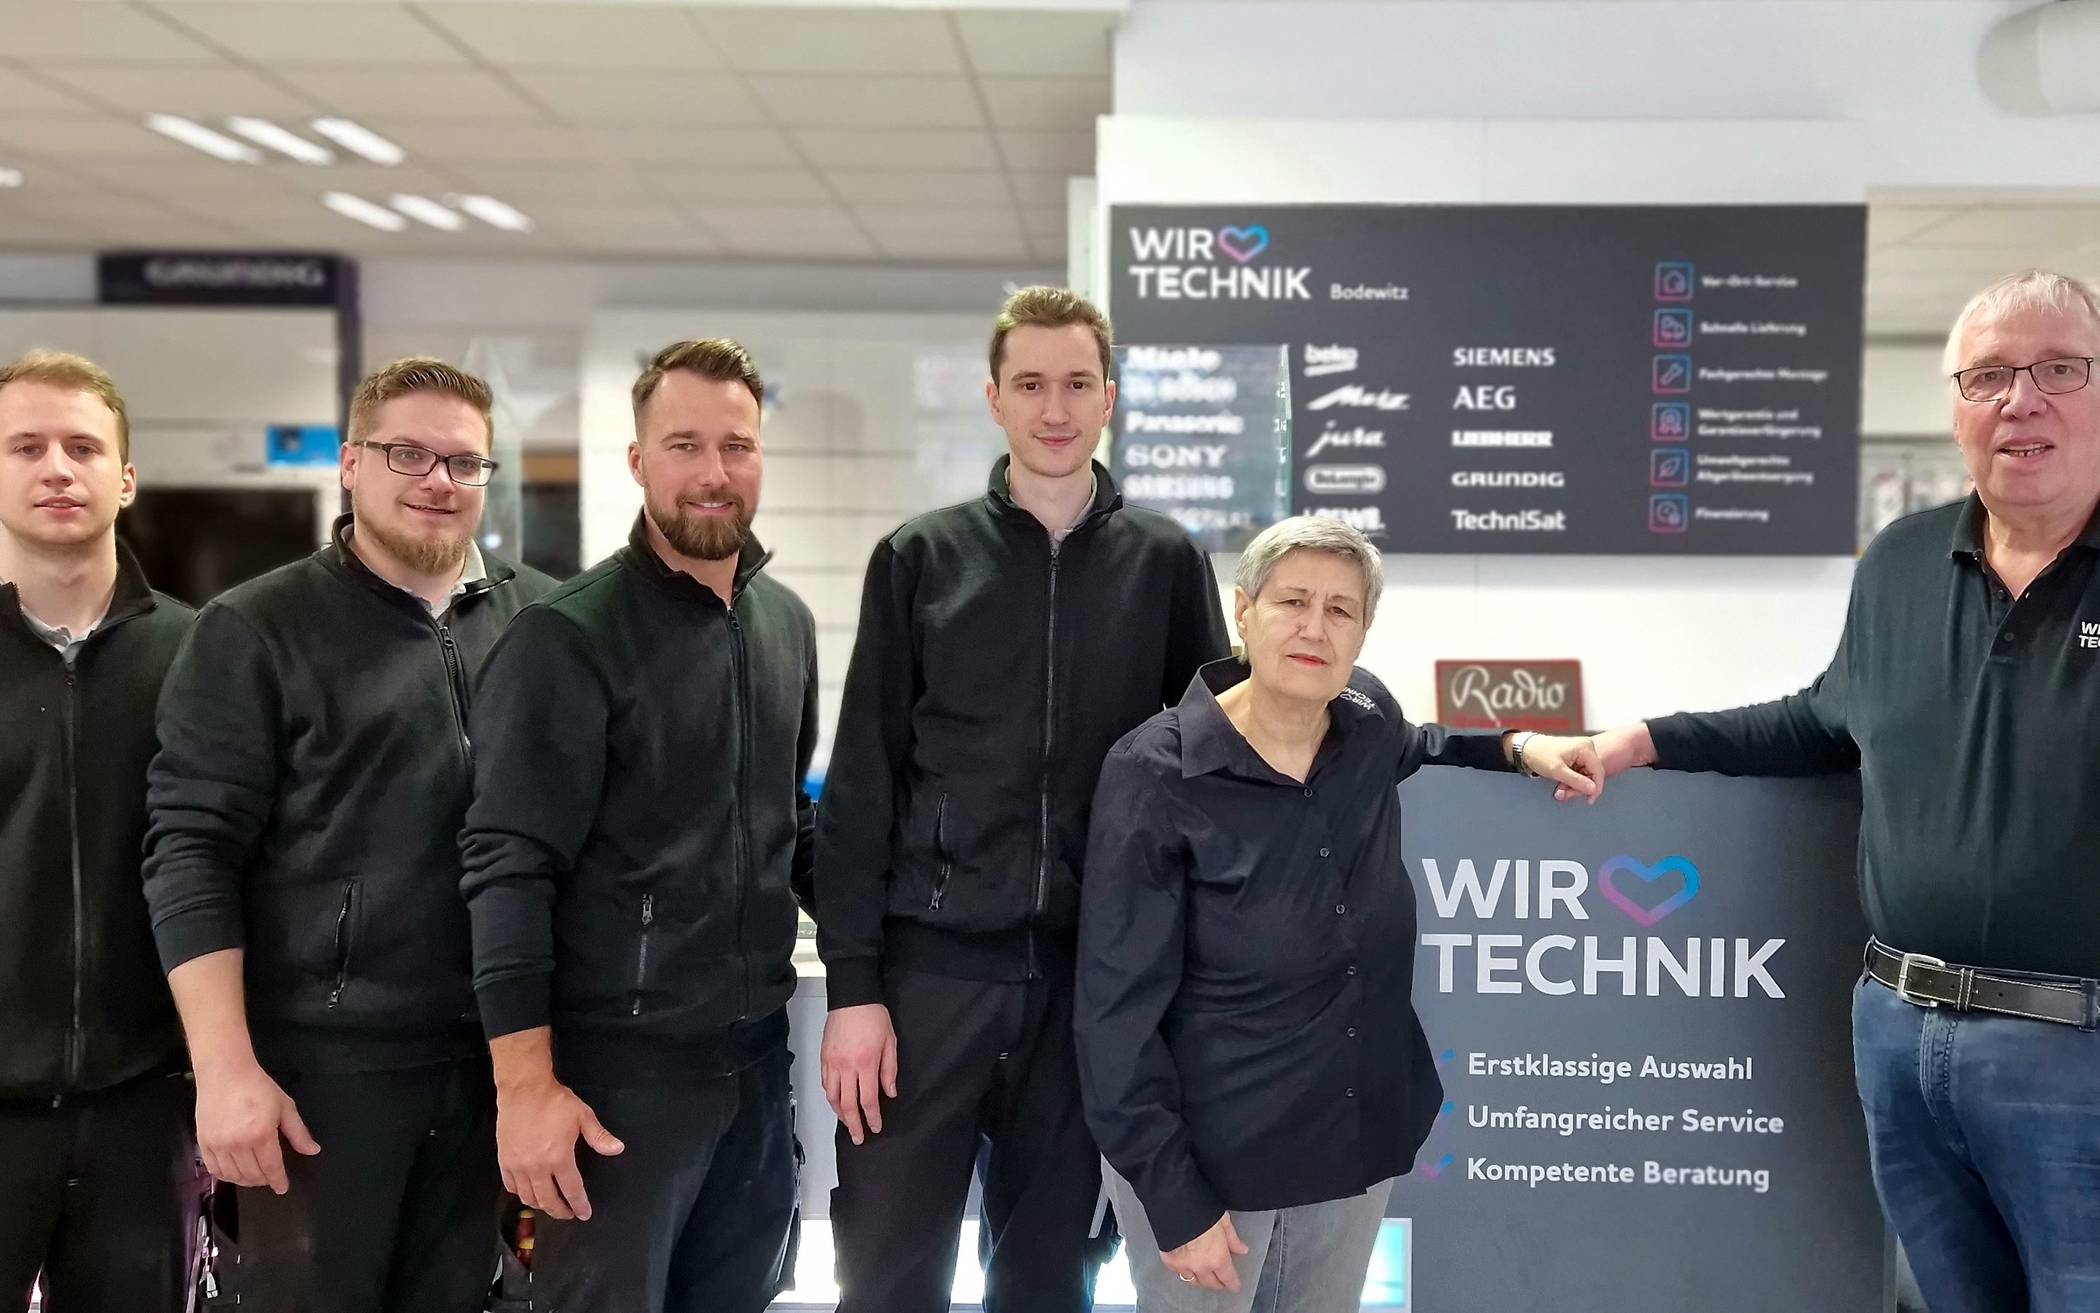  Wir lieben Technik – Bodewitz ist eine feste Fachhandelsgröße in Grevenbroich. 